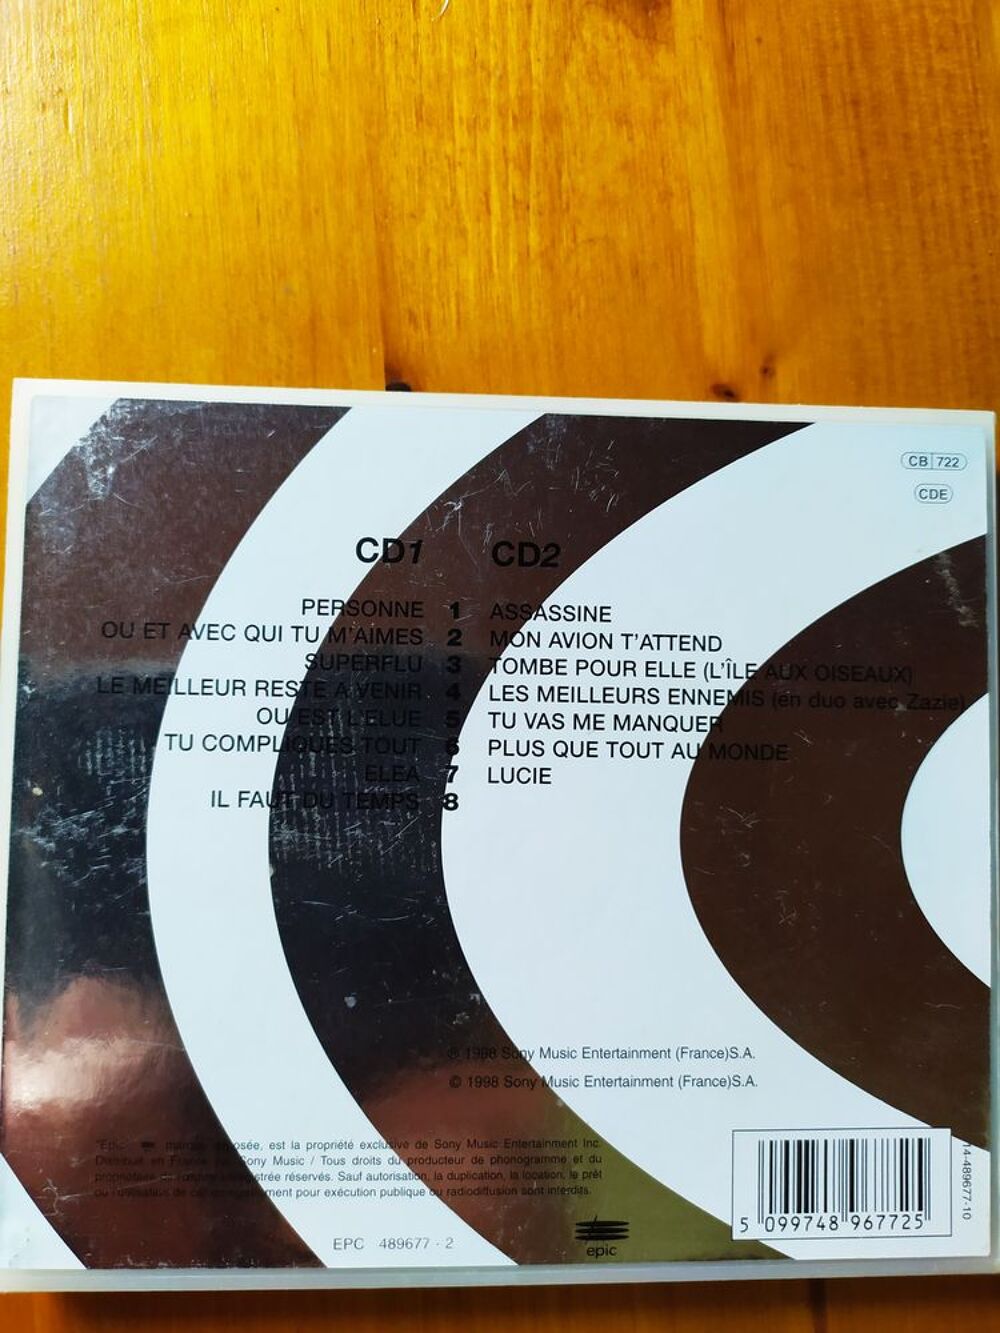 Double Cd Live 98 Pascal Obispo
CD et vinyles